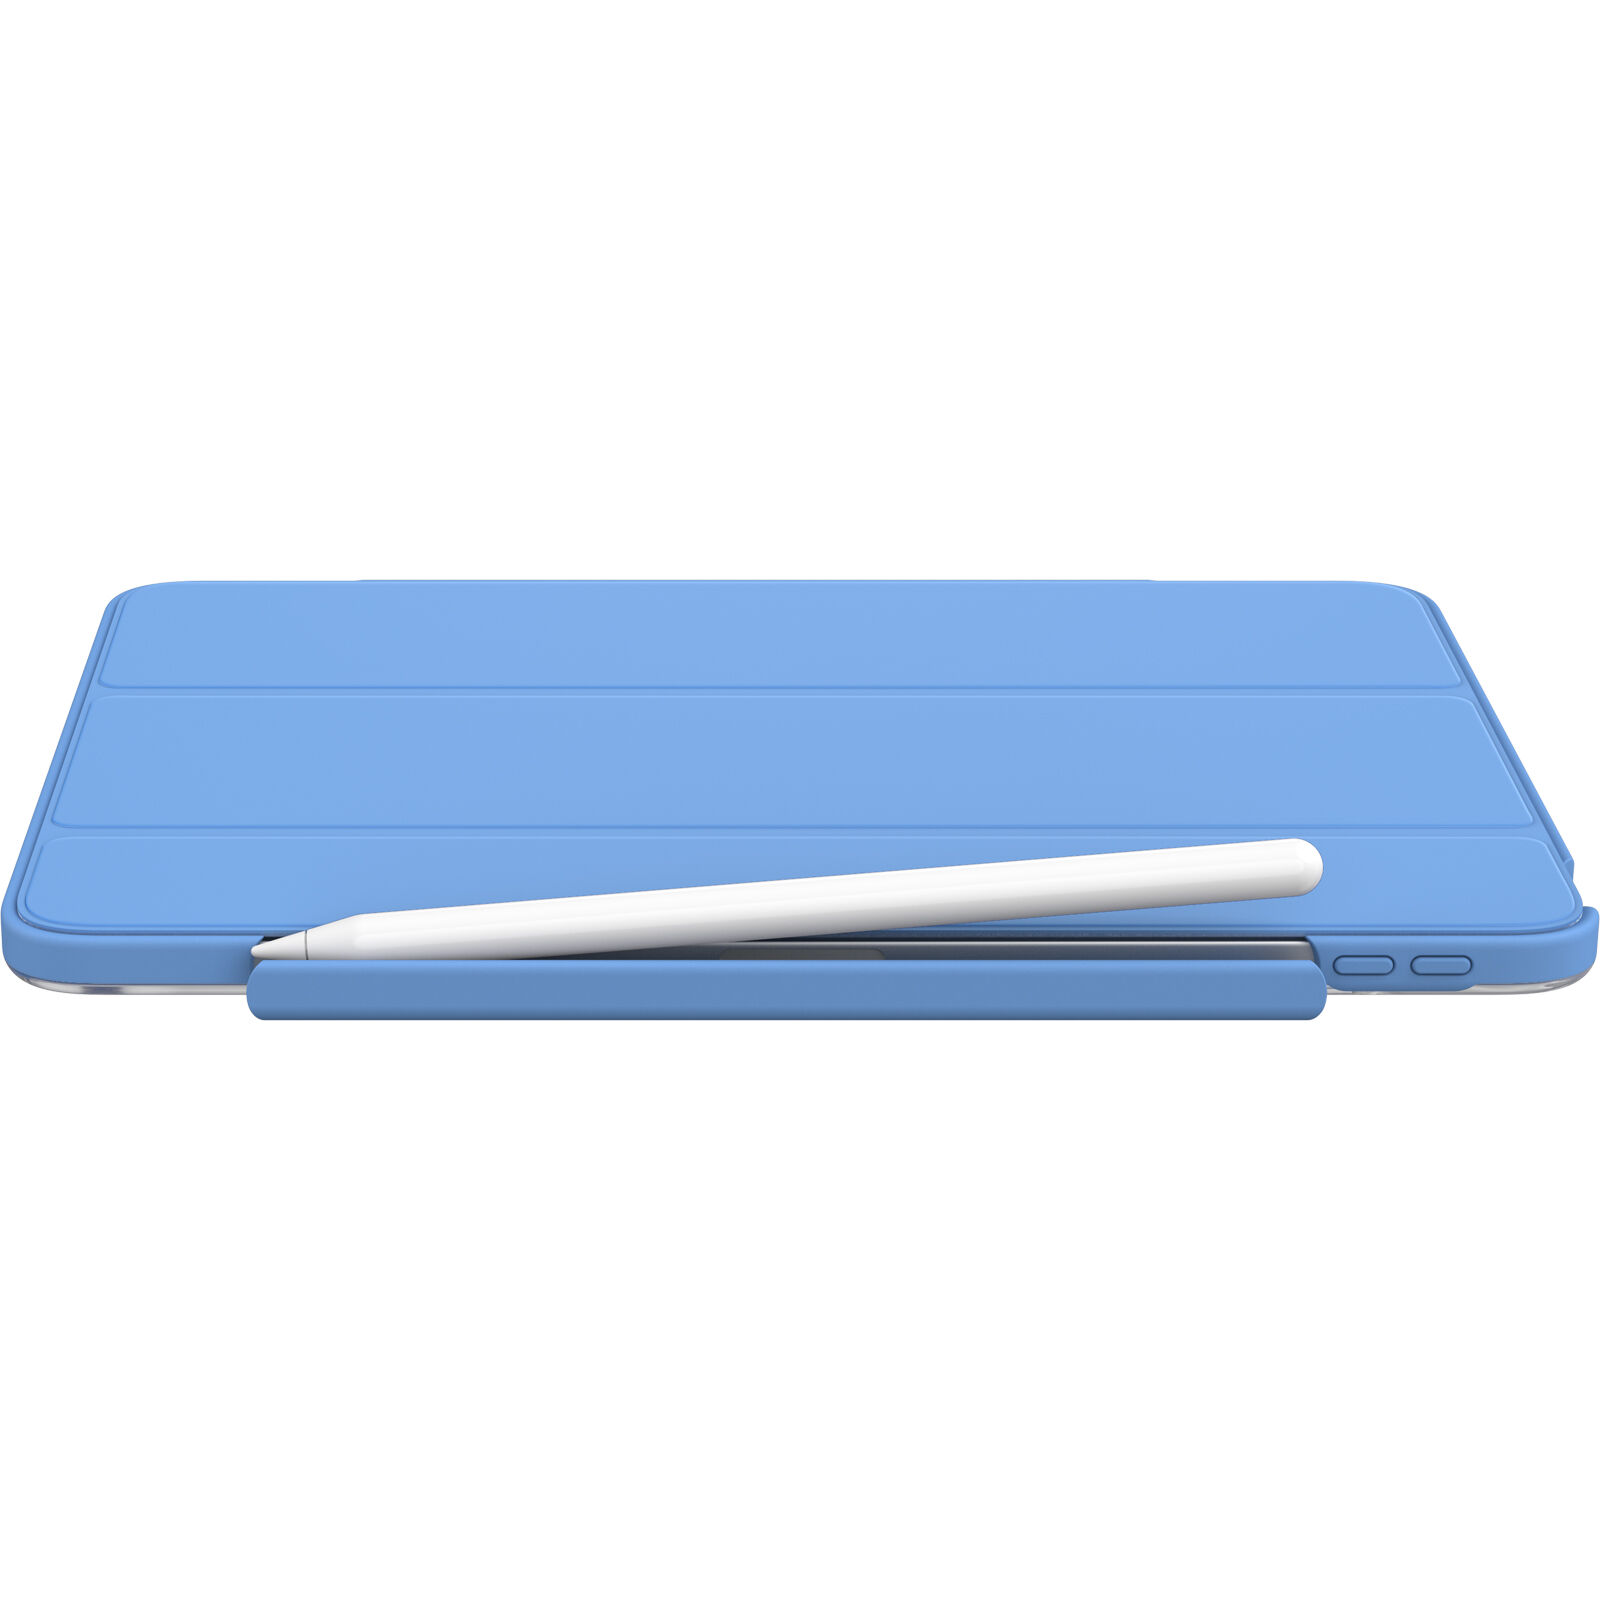 Symmetry 360 Elite 12.9インチ ipadカバー - iPadアクセサリー